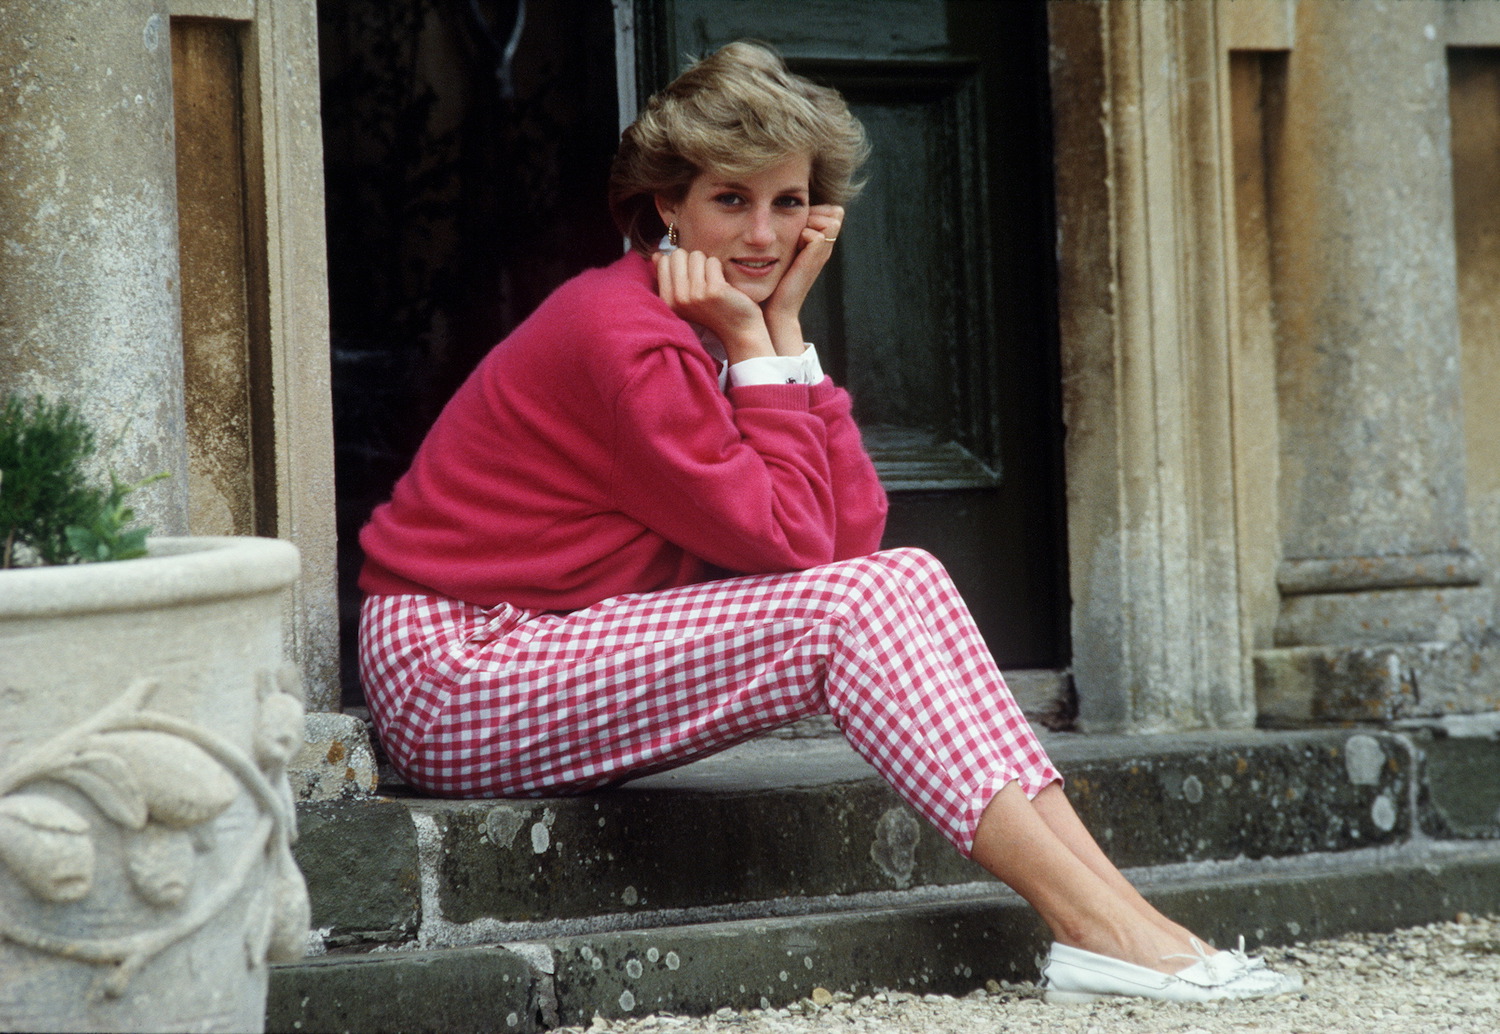 Sarah Ferguson Shares Emotional Tribute To ‘Dear Friend,’ Princess Diana